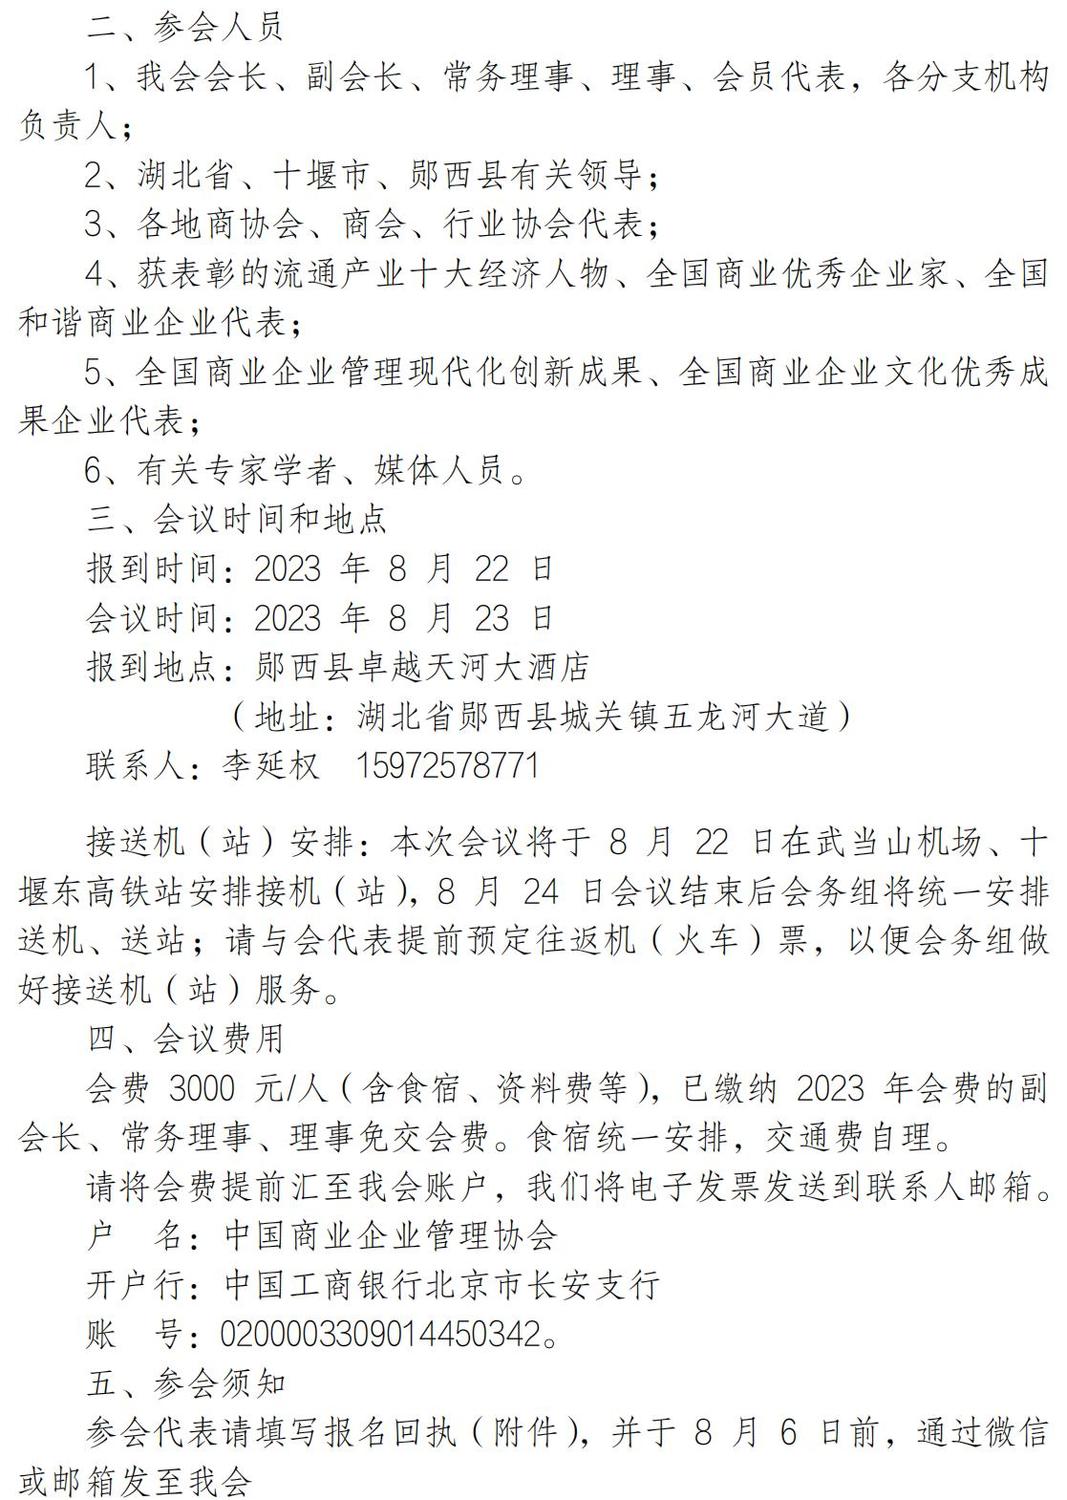 2023中国商业企业家活动日的通知_02.jpg